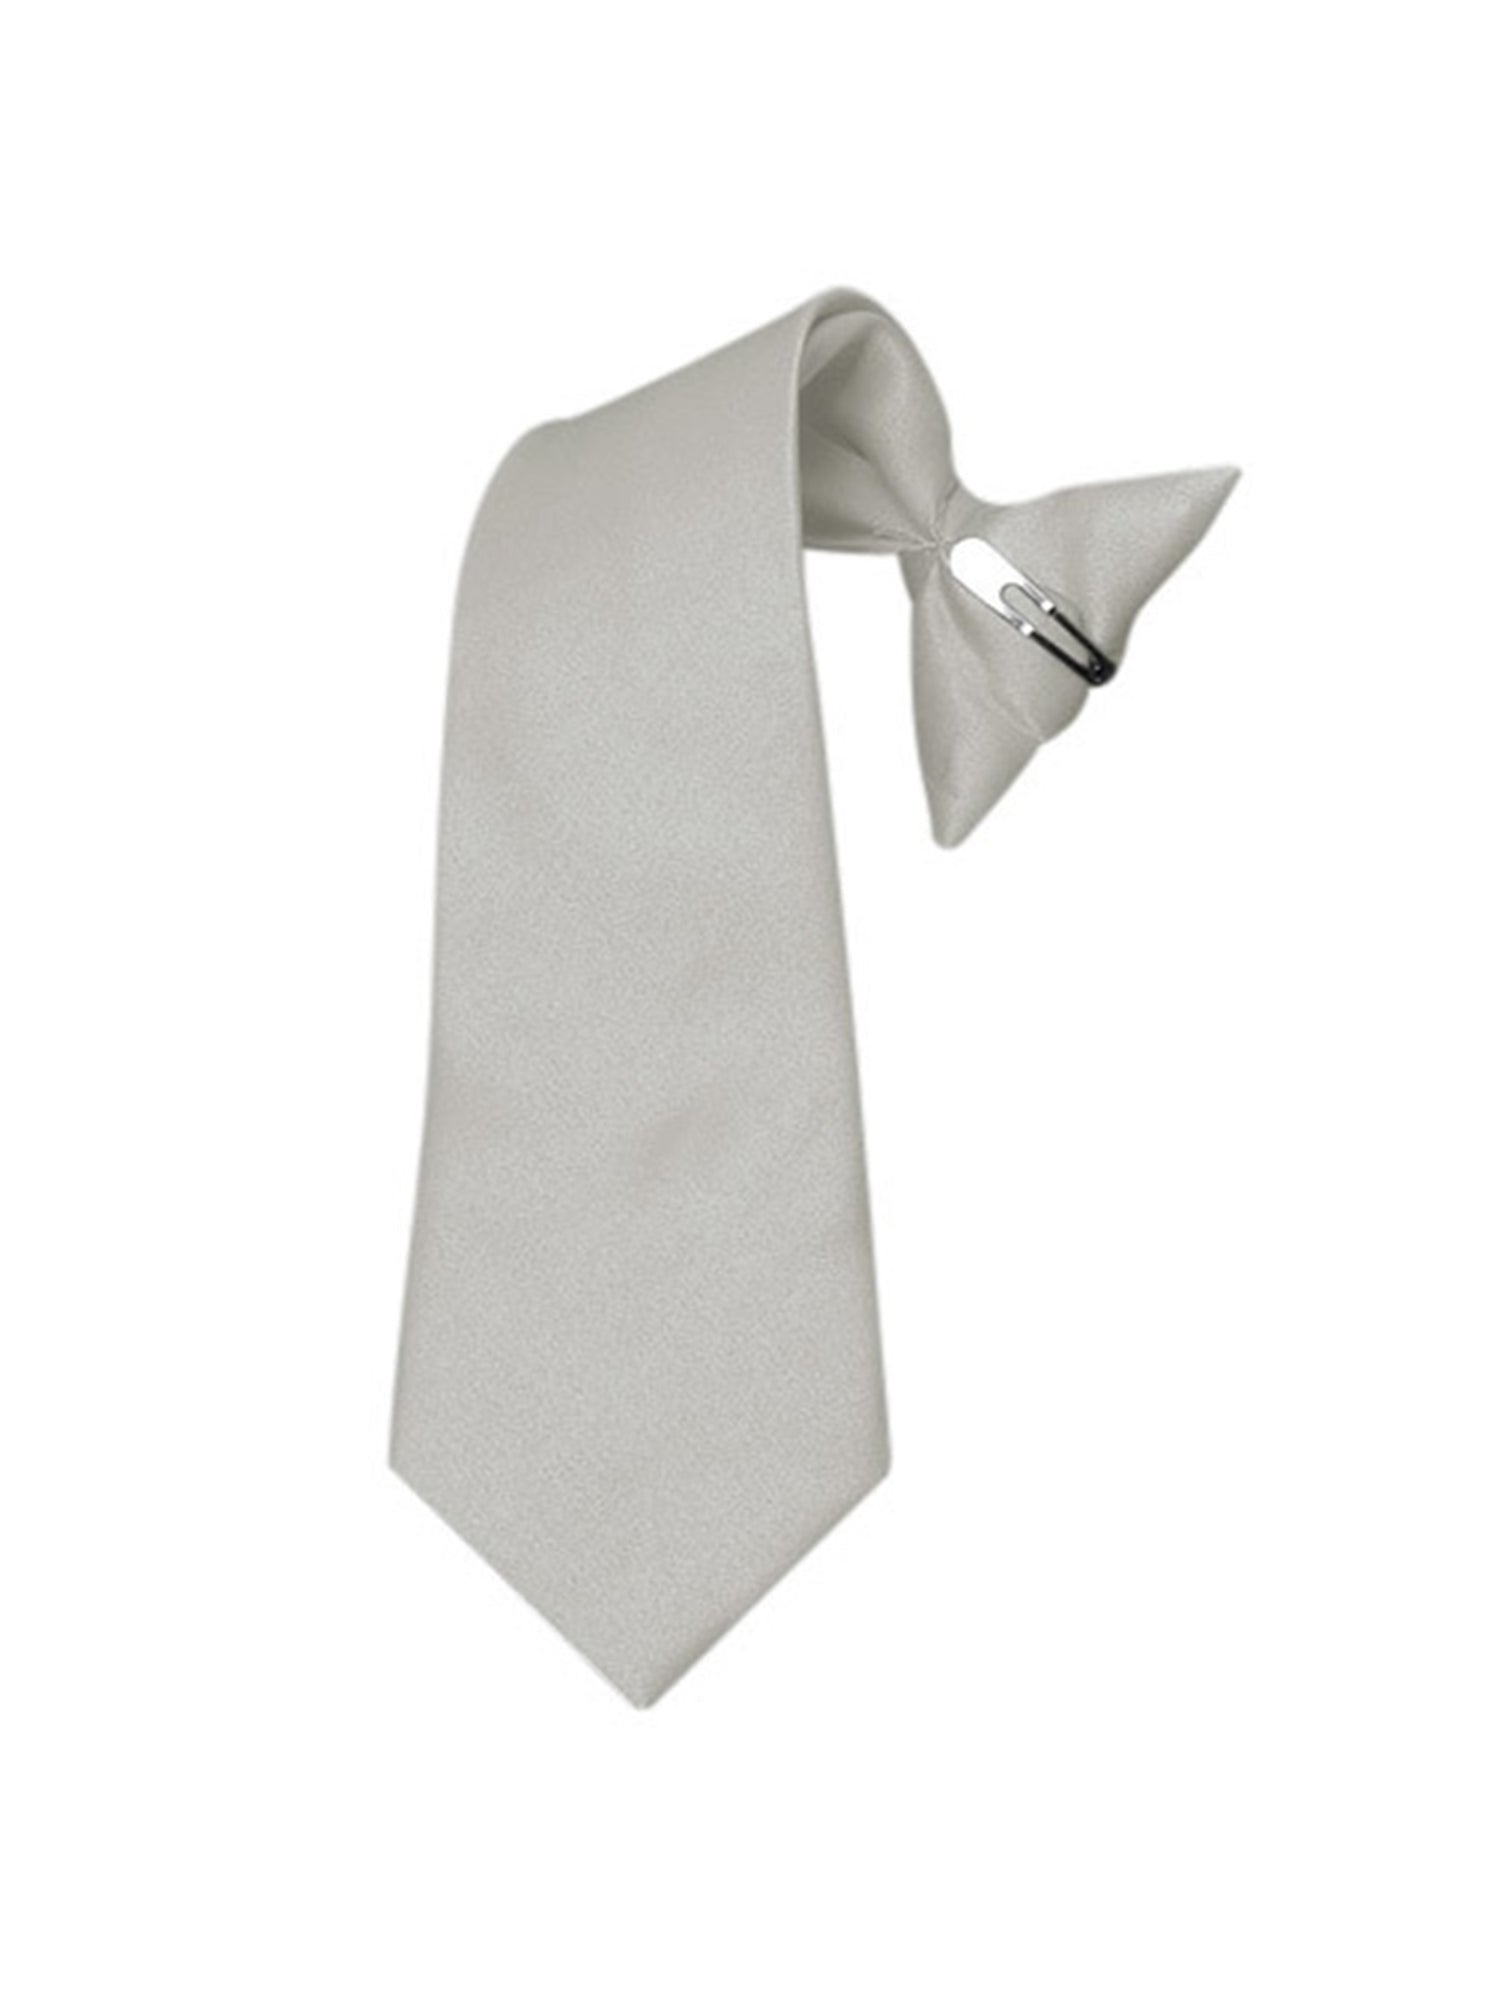 Boy's Solid Color Pre-tied Clip On Neck Tie Neck Tie TheDapperTie Silver 8" x 2.5" 